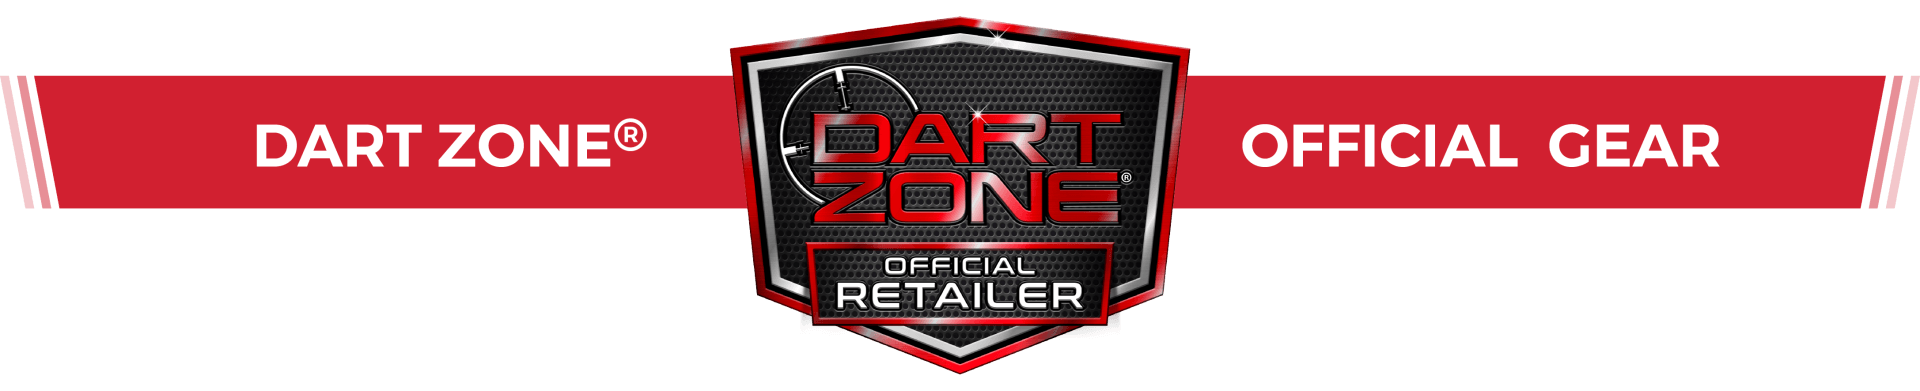 Dart Zone® Official Gear, Dart Zone, Merch,